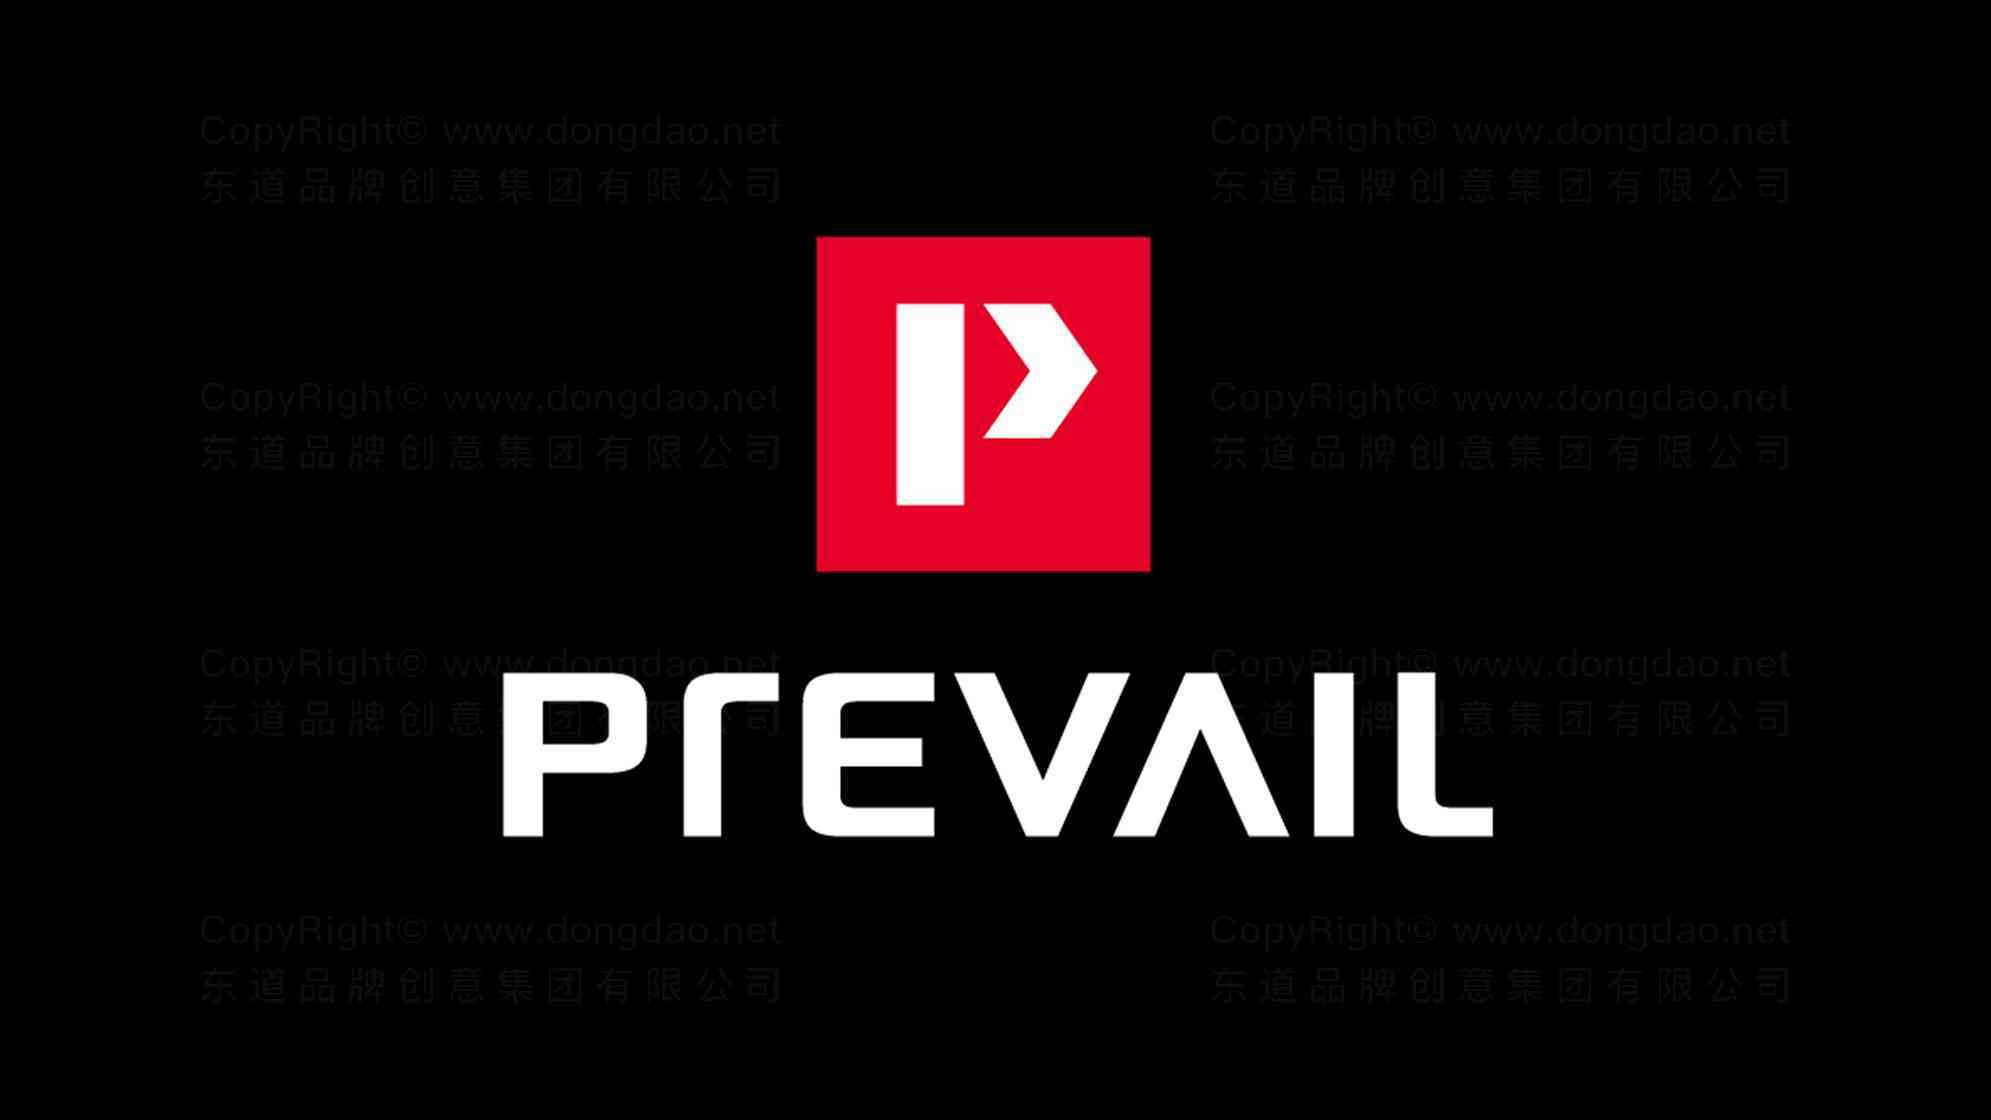 普利威logo图片-普利威五金公司logo设计图片素材